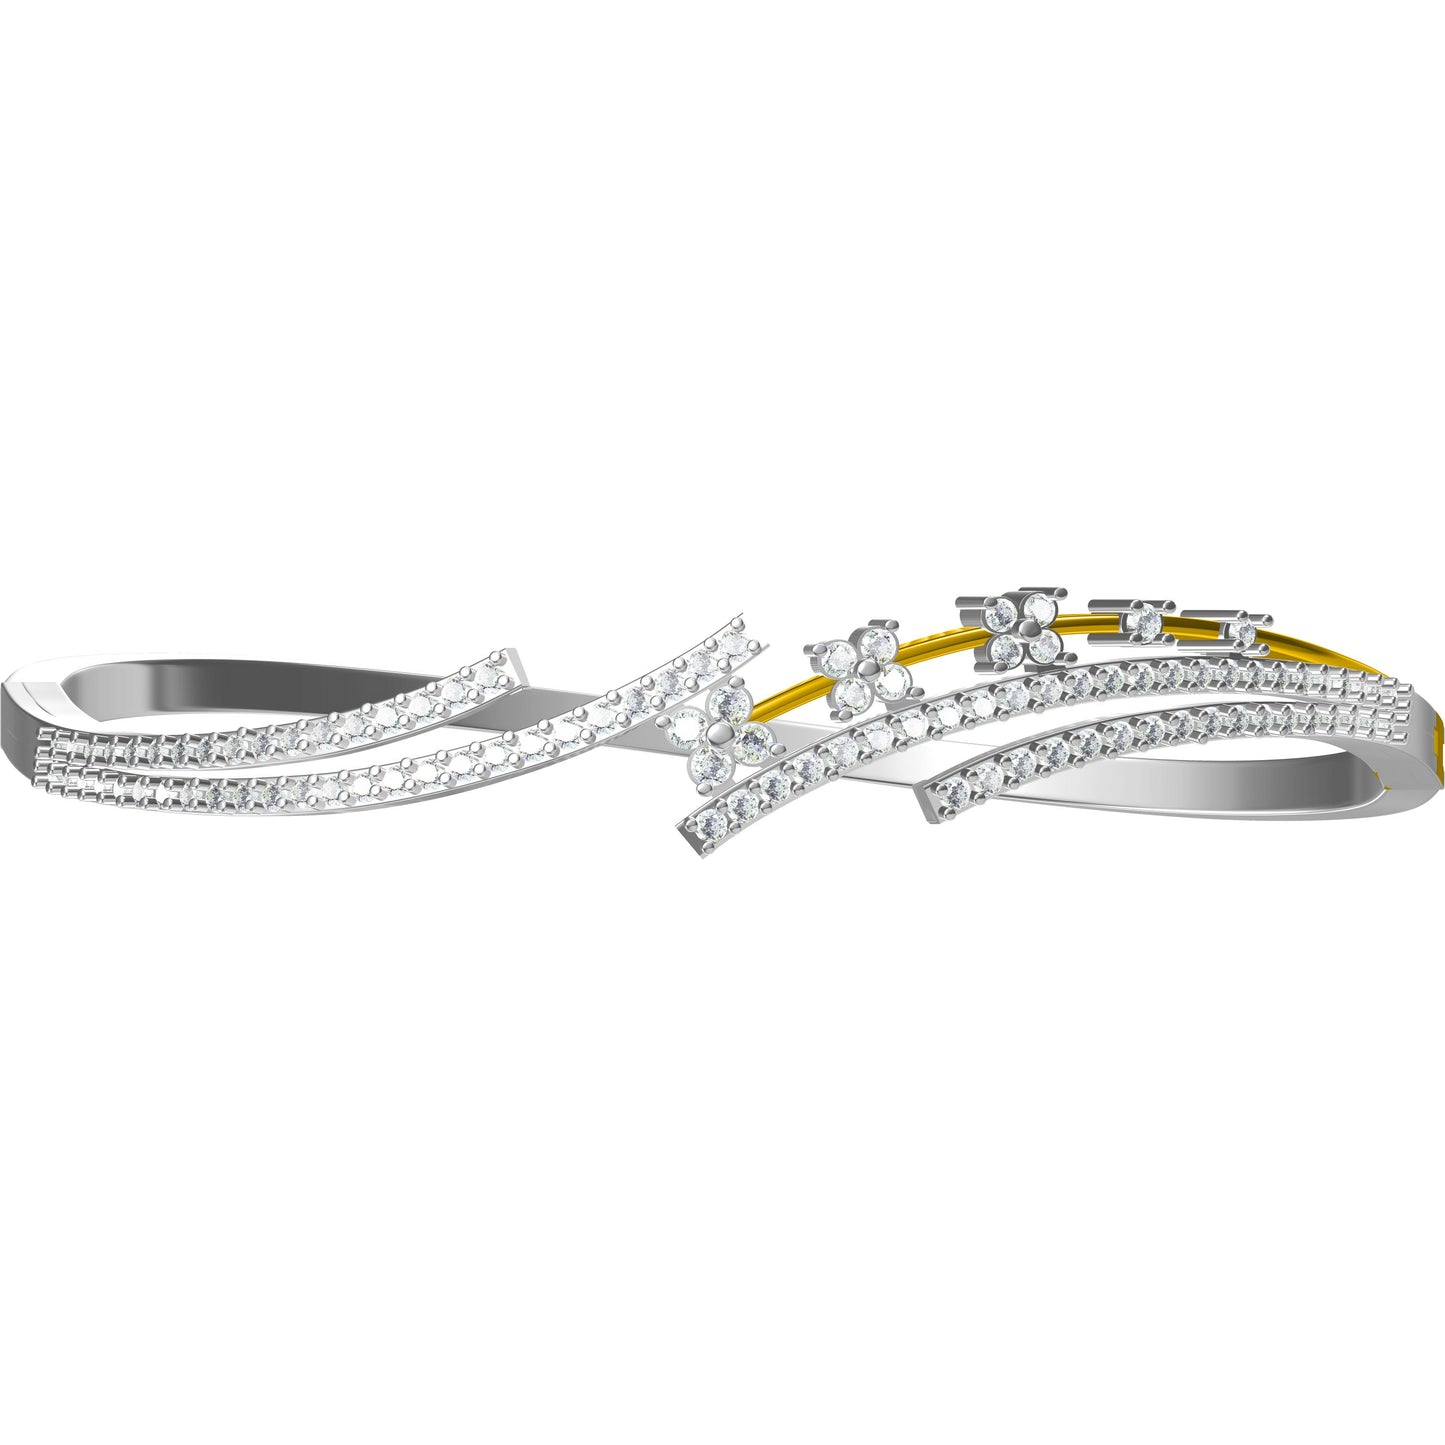 3D Jewelry Files Bracelet Model JCAD LBR-054-0614